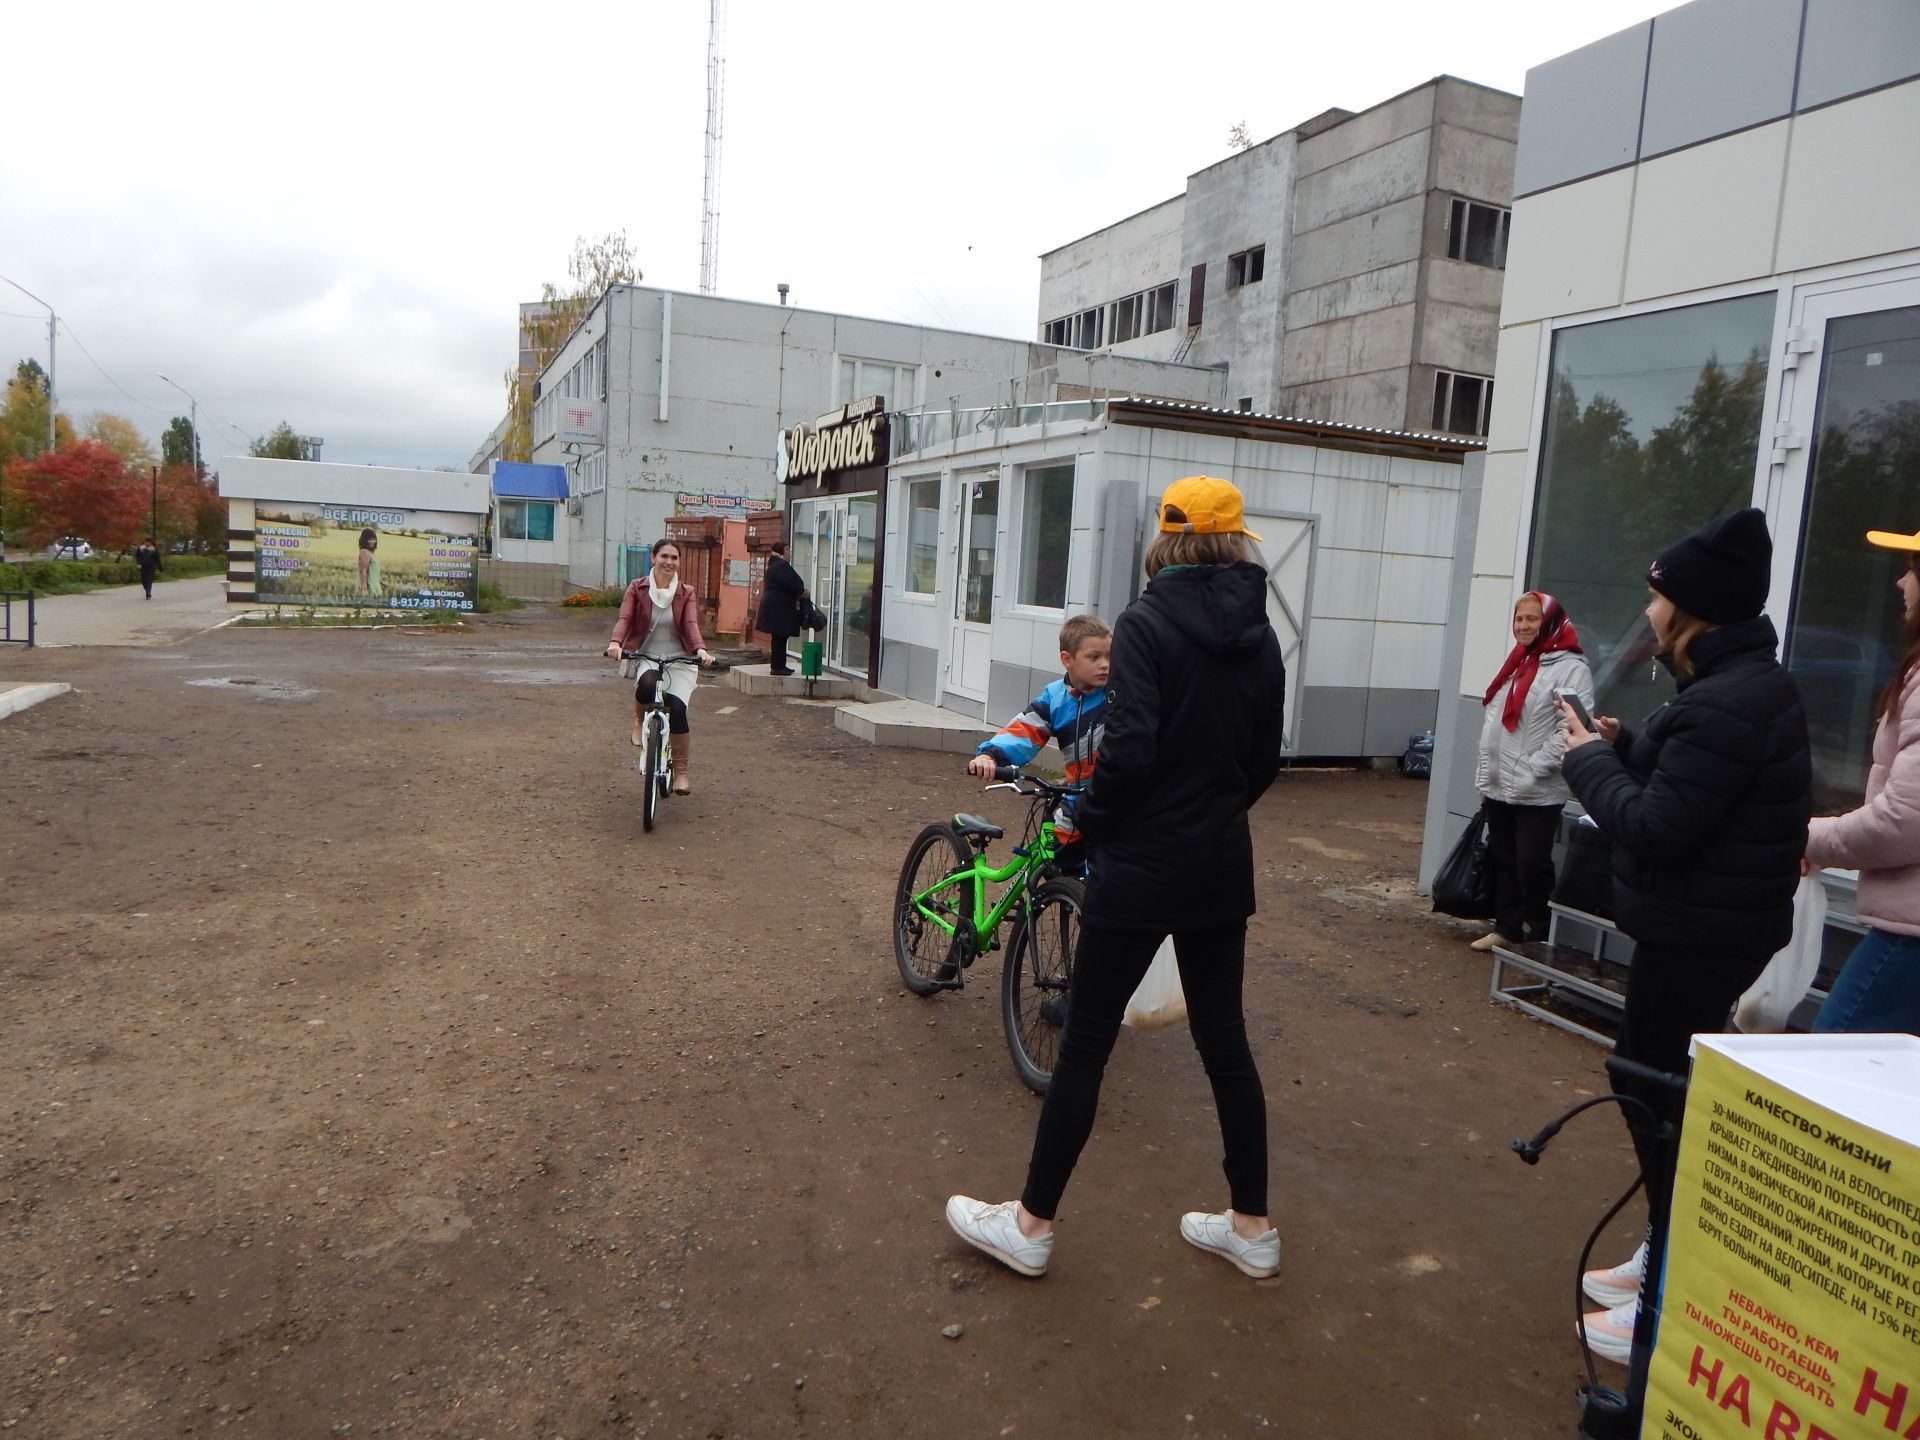 В Камских Полянах впервые прошла всероссийская акция "На работу на велосипеде"